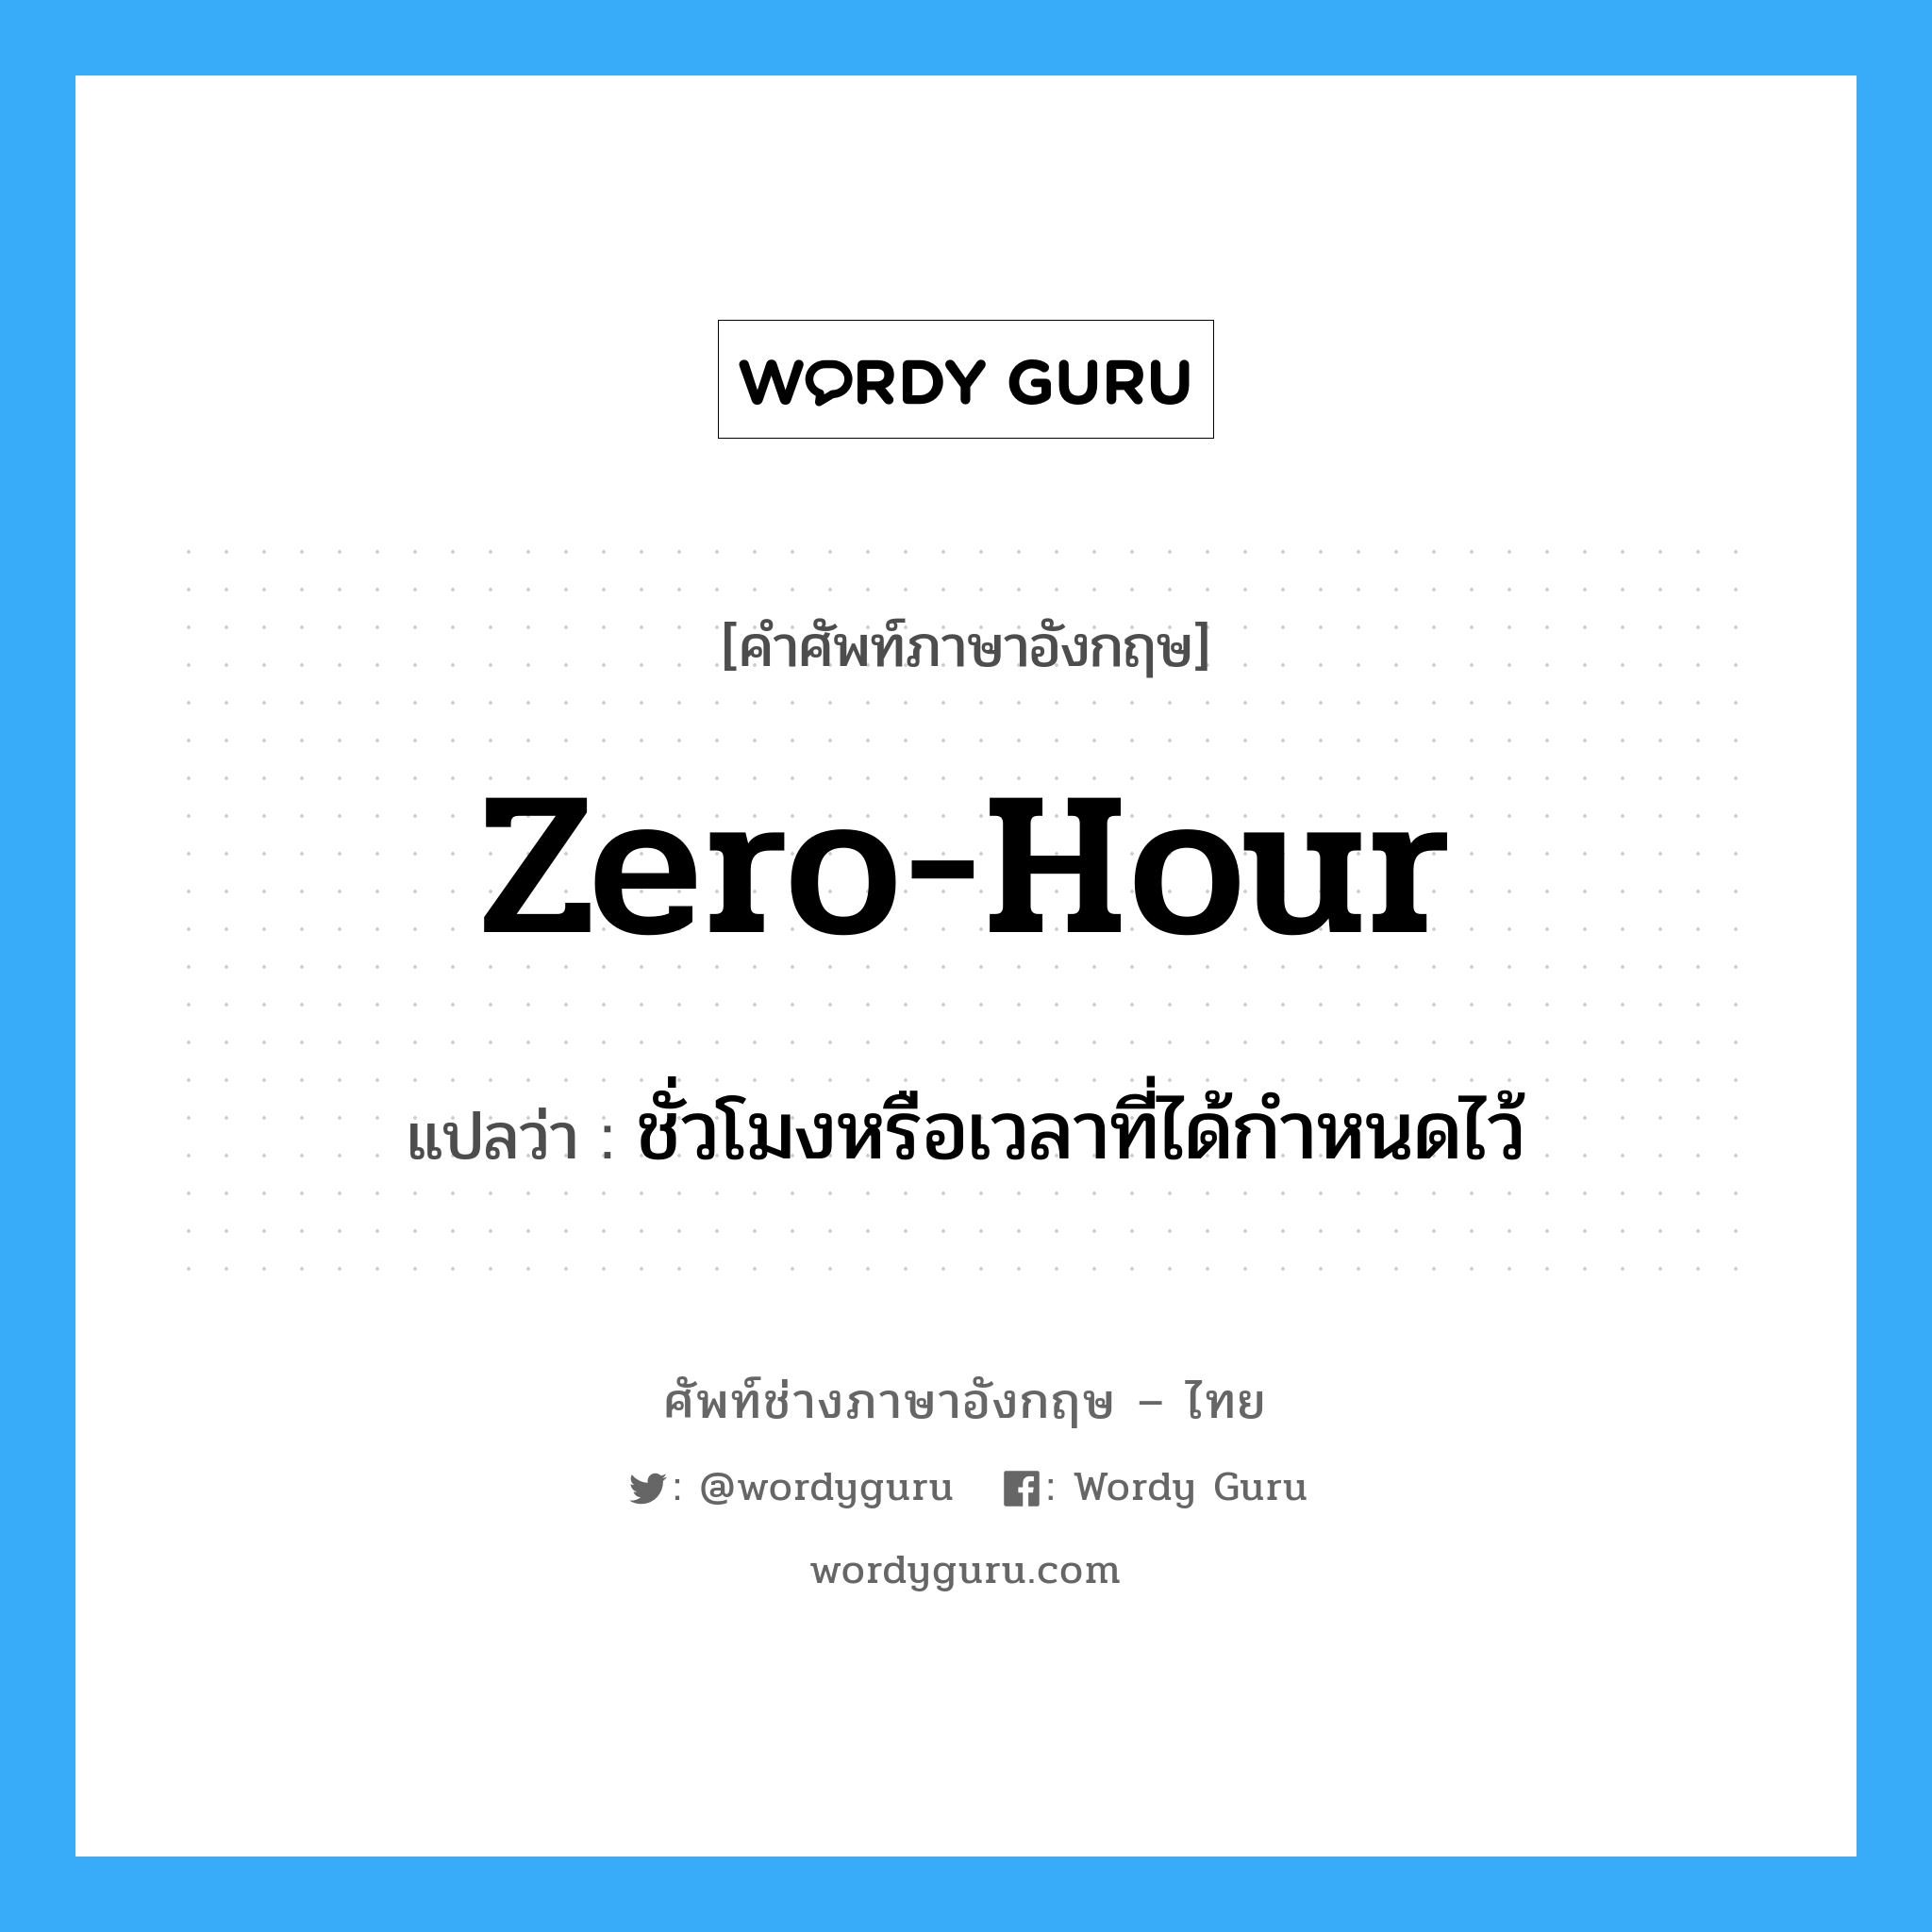 ชั่วโมงหรือเวลาที่ได้กำหนดไว้ ภาษาอังกฤษ?, คำศัพท์ช่างภาษาอังกฤษ - ไทย ชั่วโมงหรือเวลาที่ได้กำหนดไว้ คำศัพท์ภาษาอังกฤษ ชั่วโมงหรือเวลาที่ได้กำหนดไว้ แปลว่า zero-hour